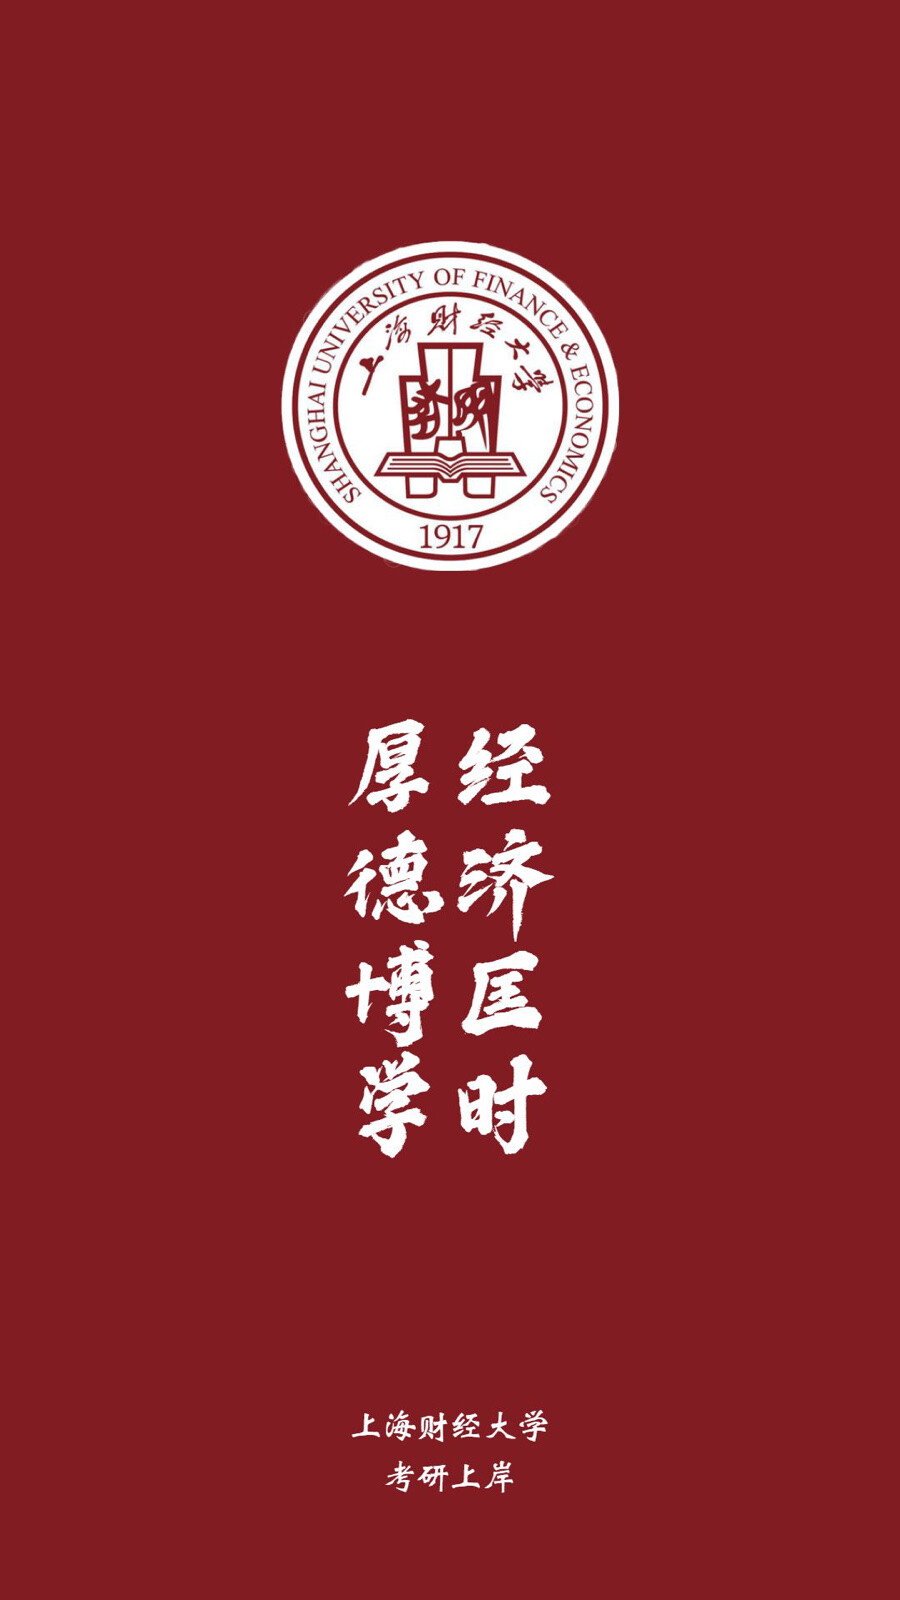 上海财经大学 - 堆糖,美图壁纸兴趣社区